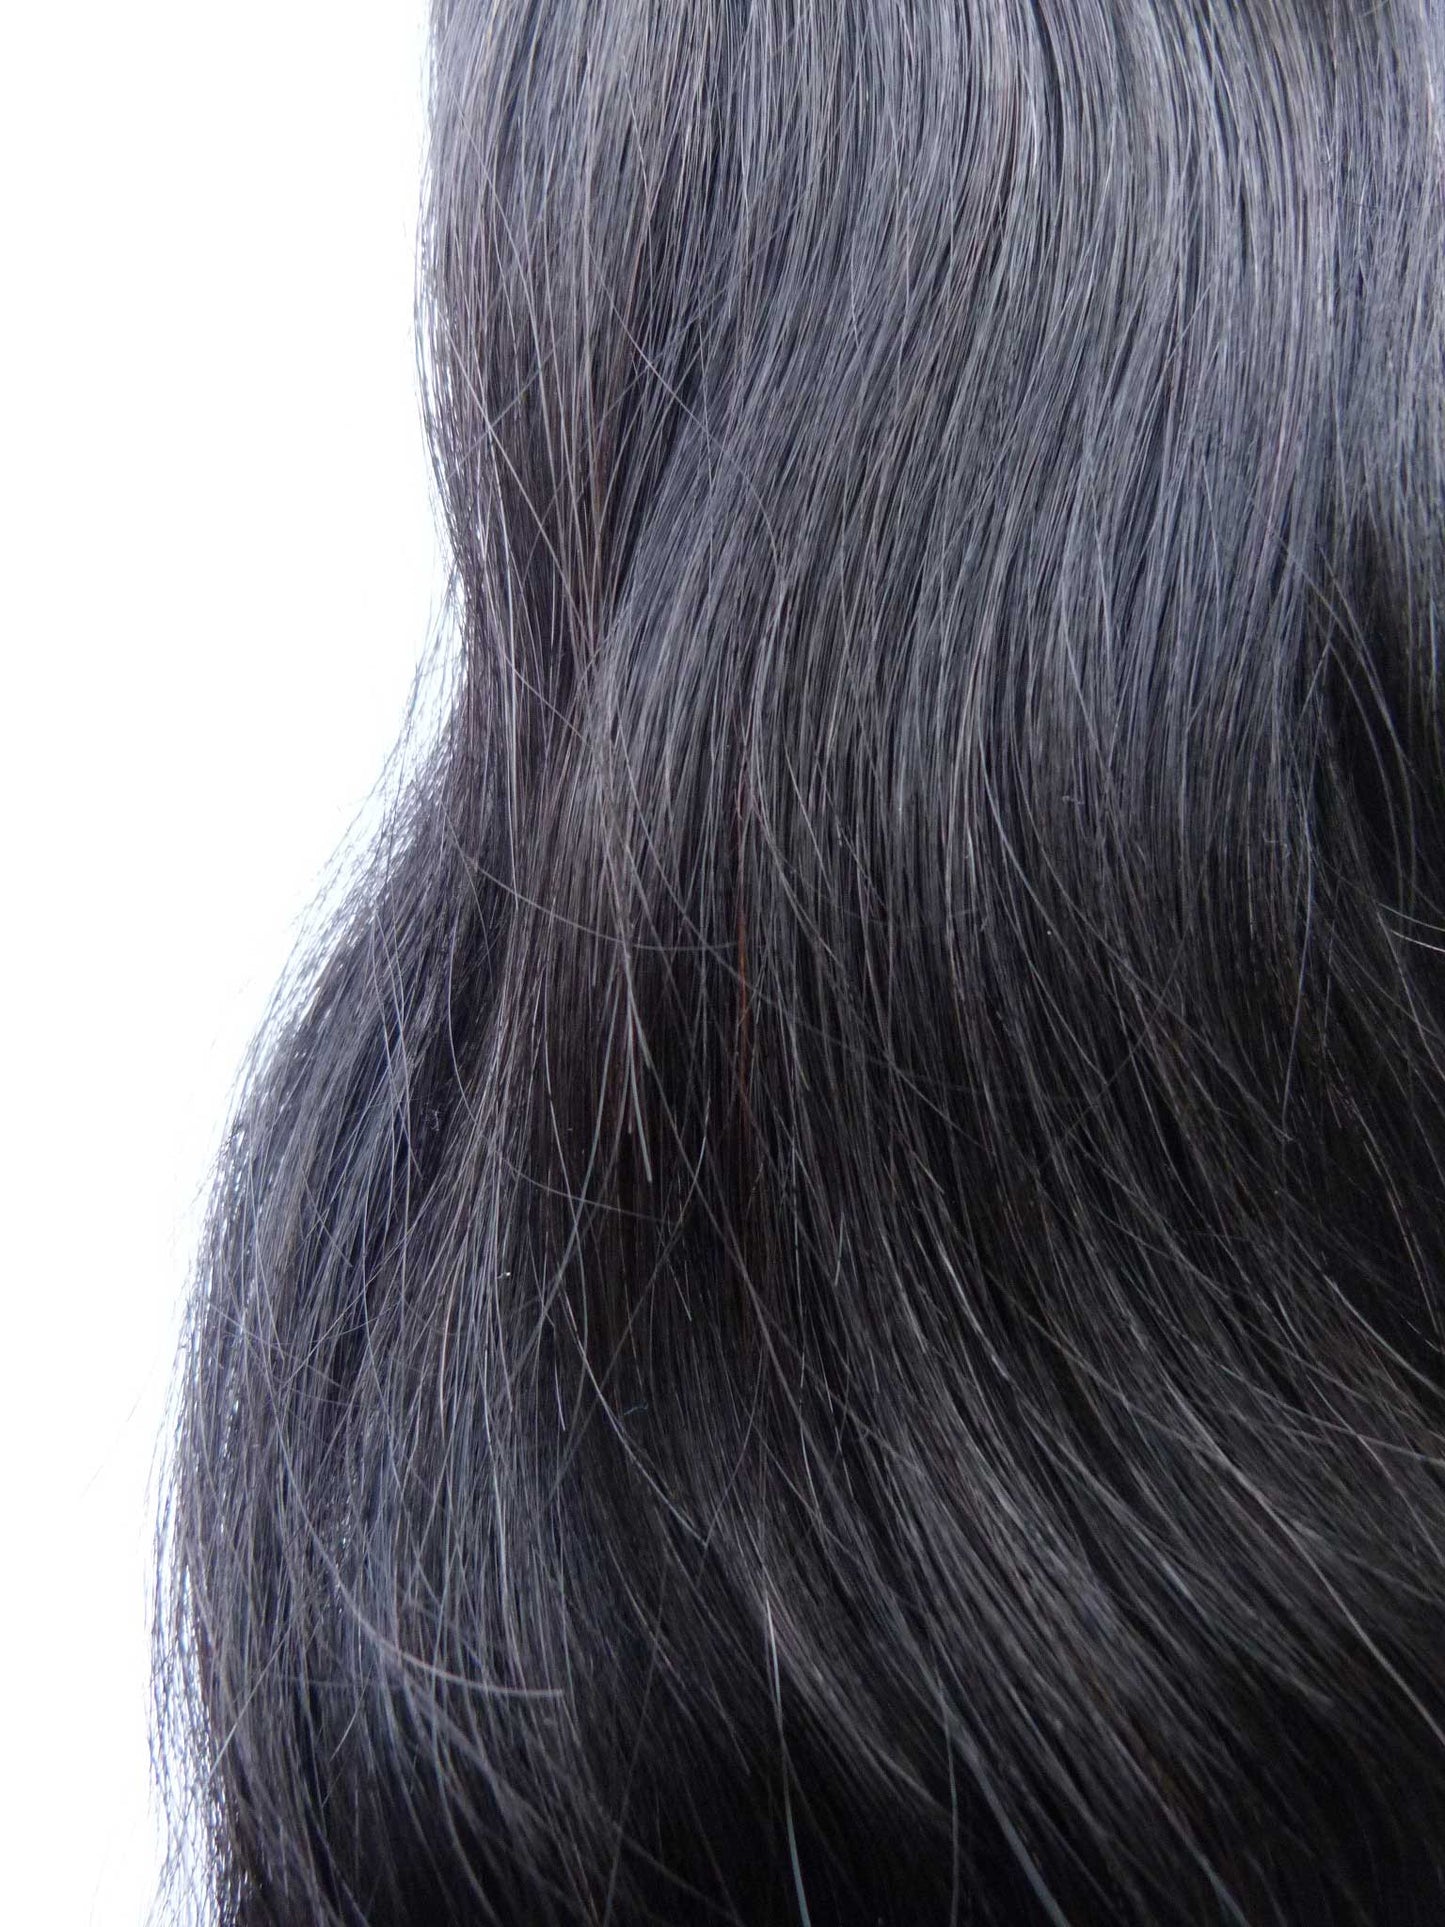 תוספות שיער אנושי בתולה אירופאית - תוספות מיקרו לולאה-שיער ויופי בתולה, תוספות השיער הטובות ביותר, שיער אנושי בתול אמיתי.